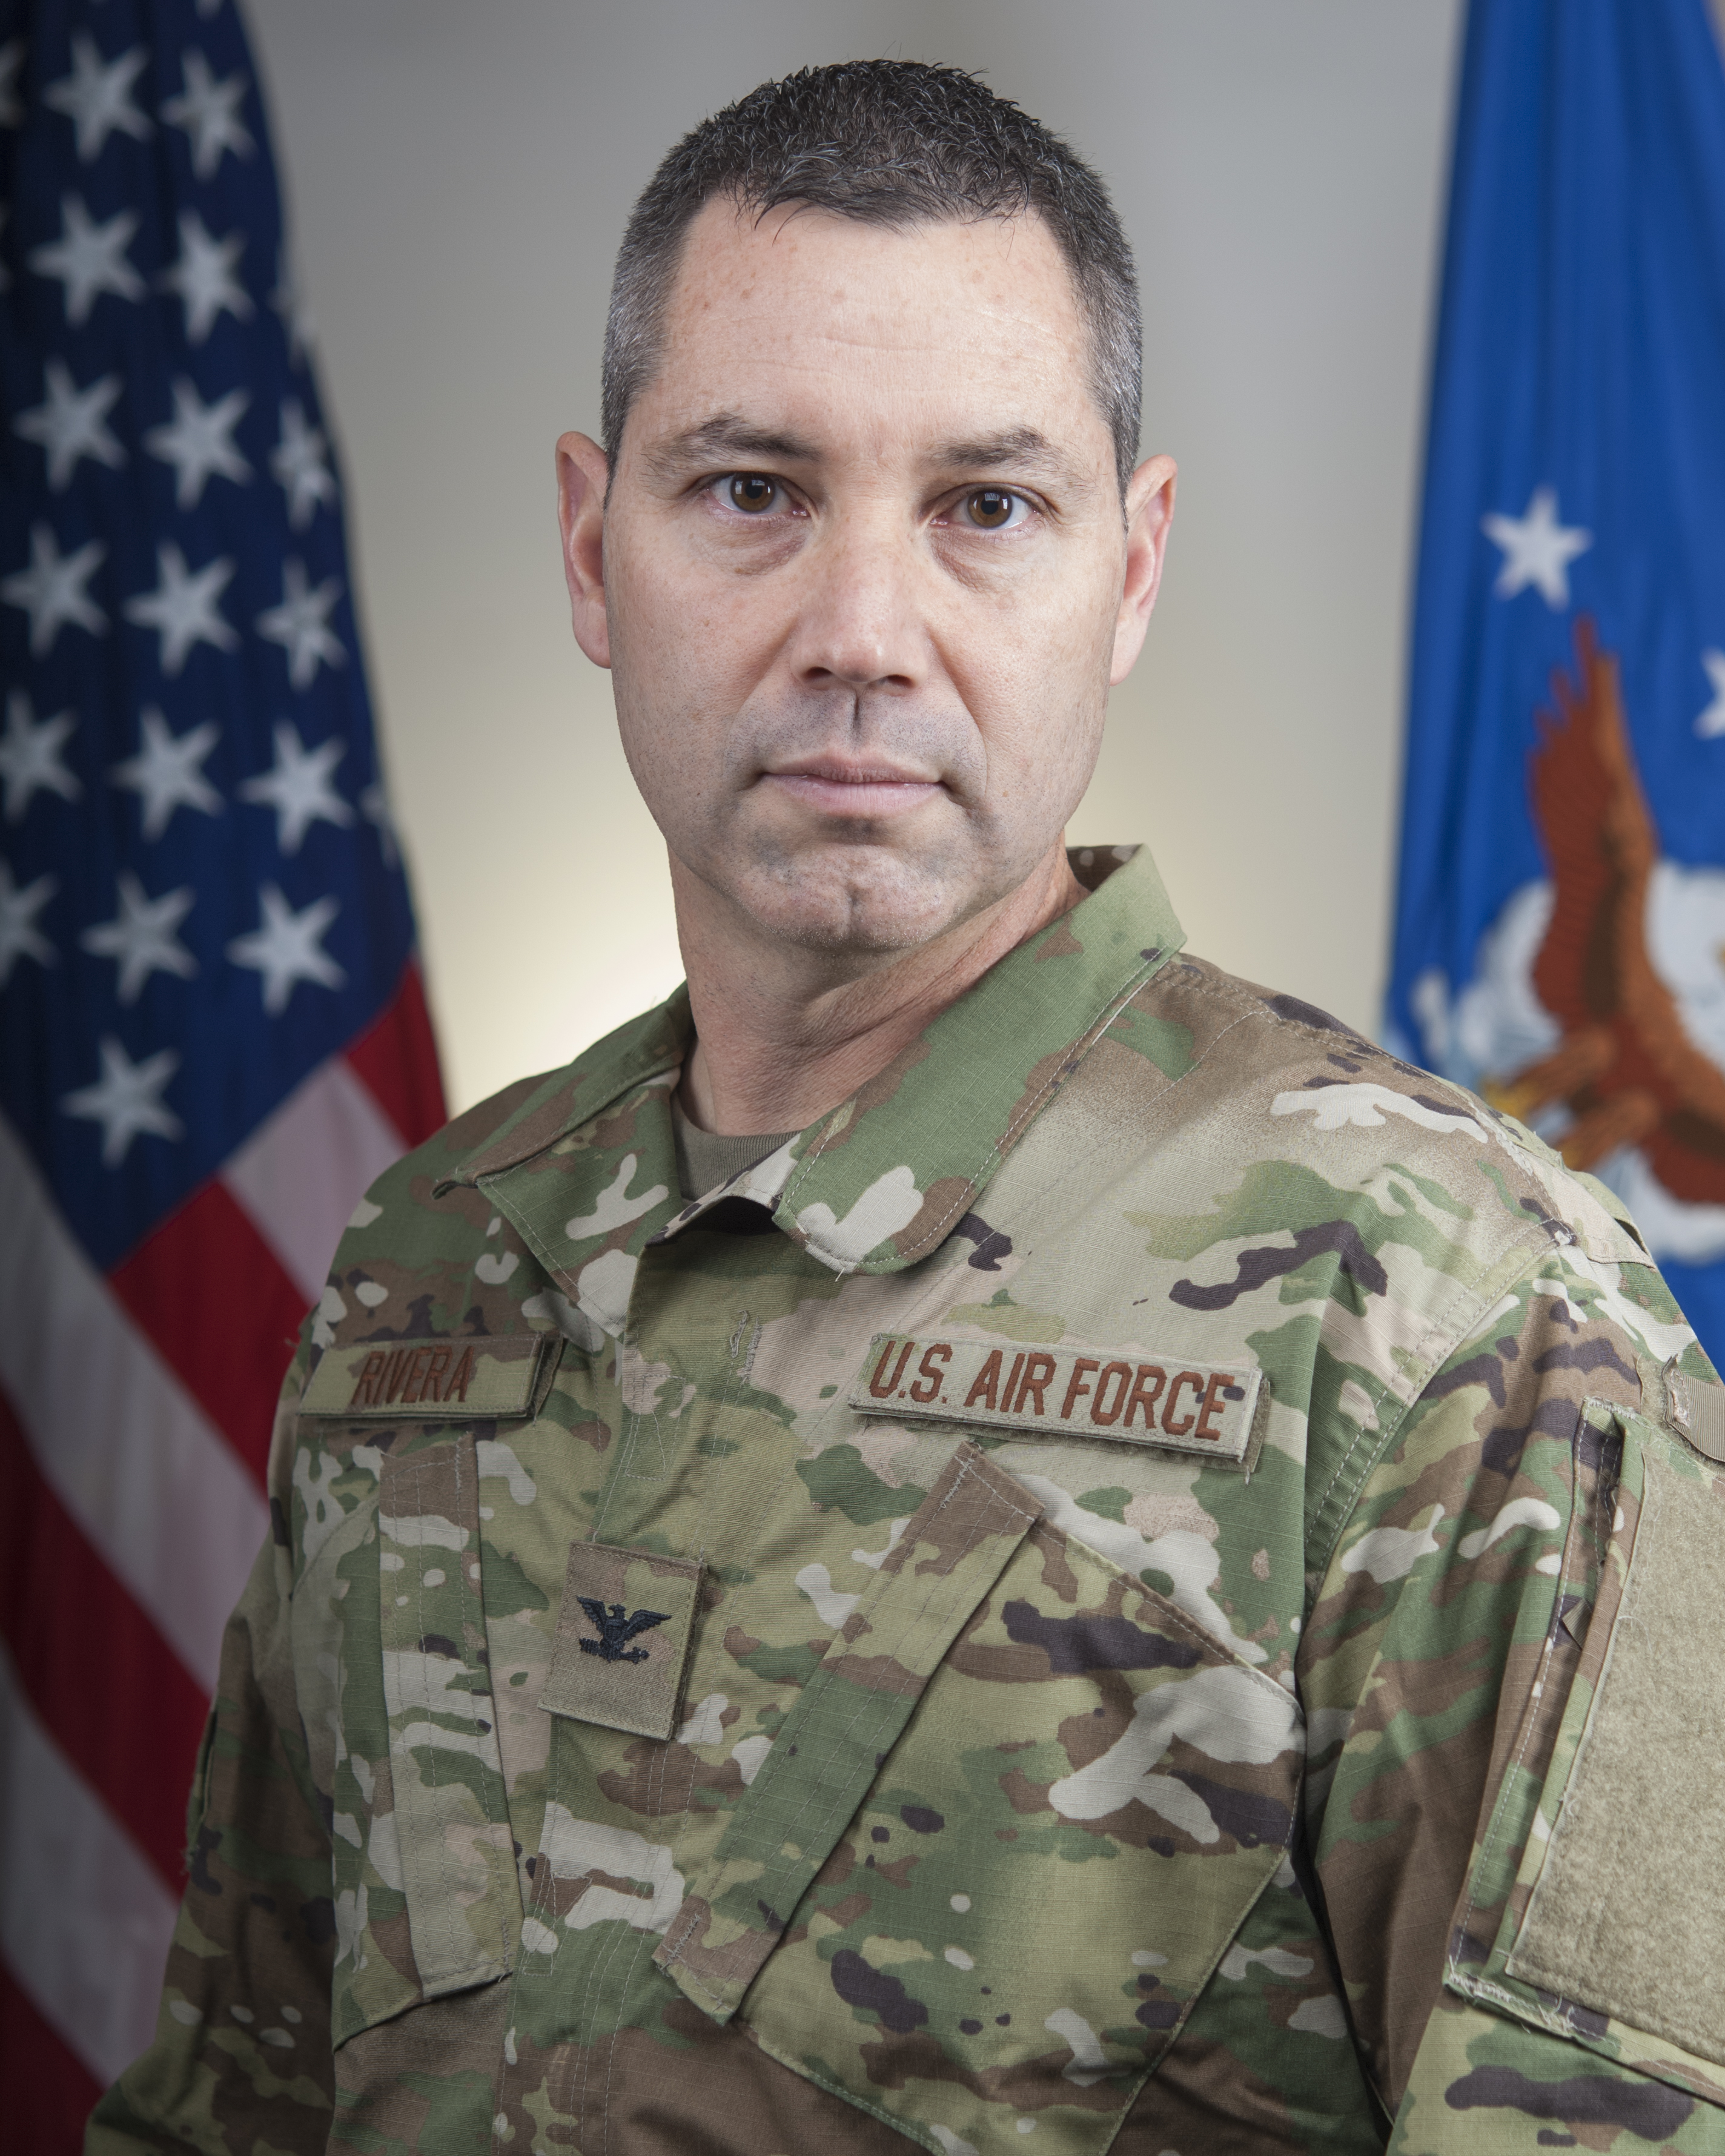 953rd Reserve Support Squadron Commander Colonel Eric T. Rivera